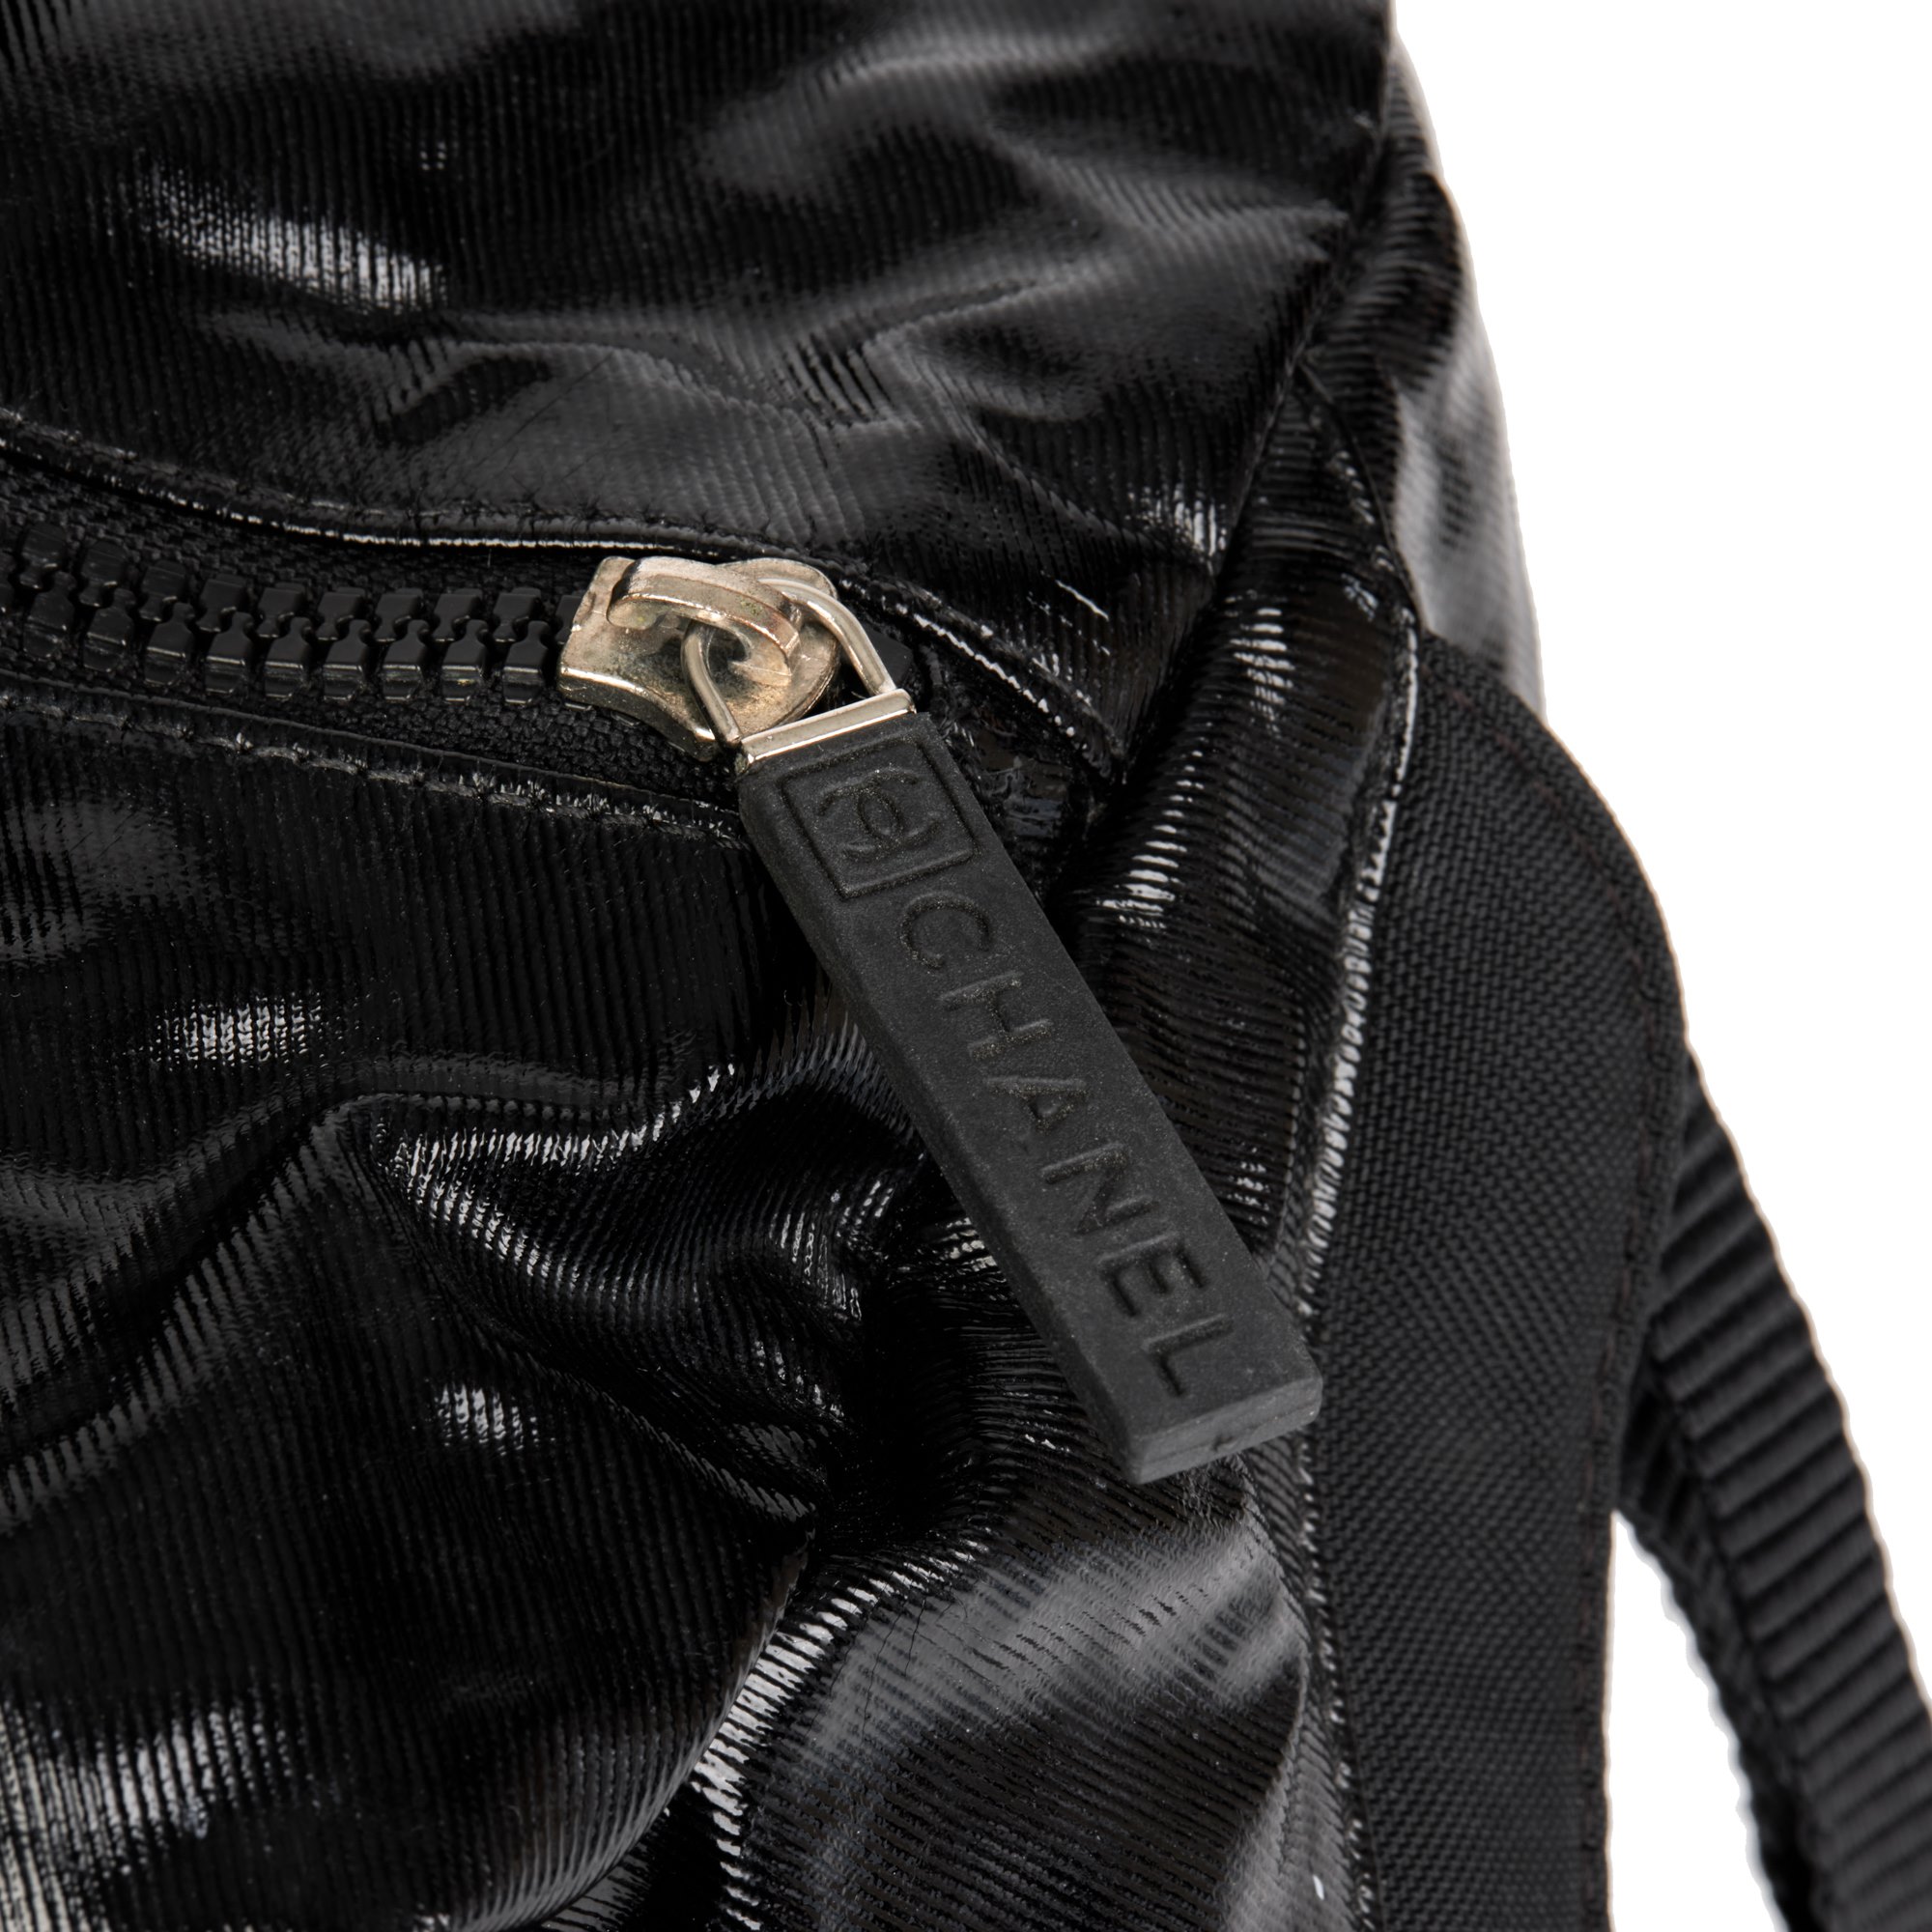 Chanel Black Vinyl & Mesh Sports Line Duffle Bag